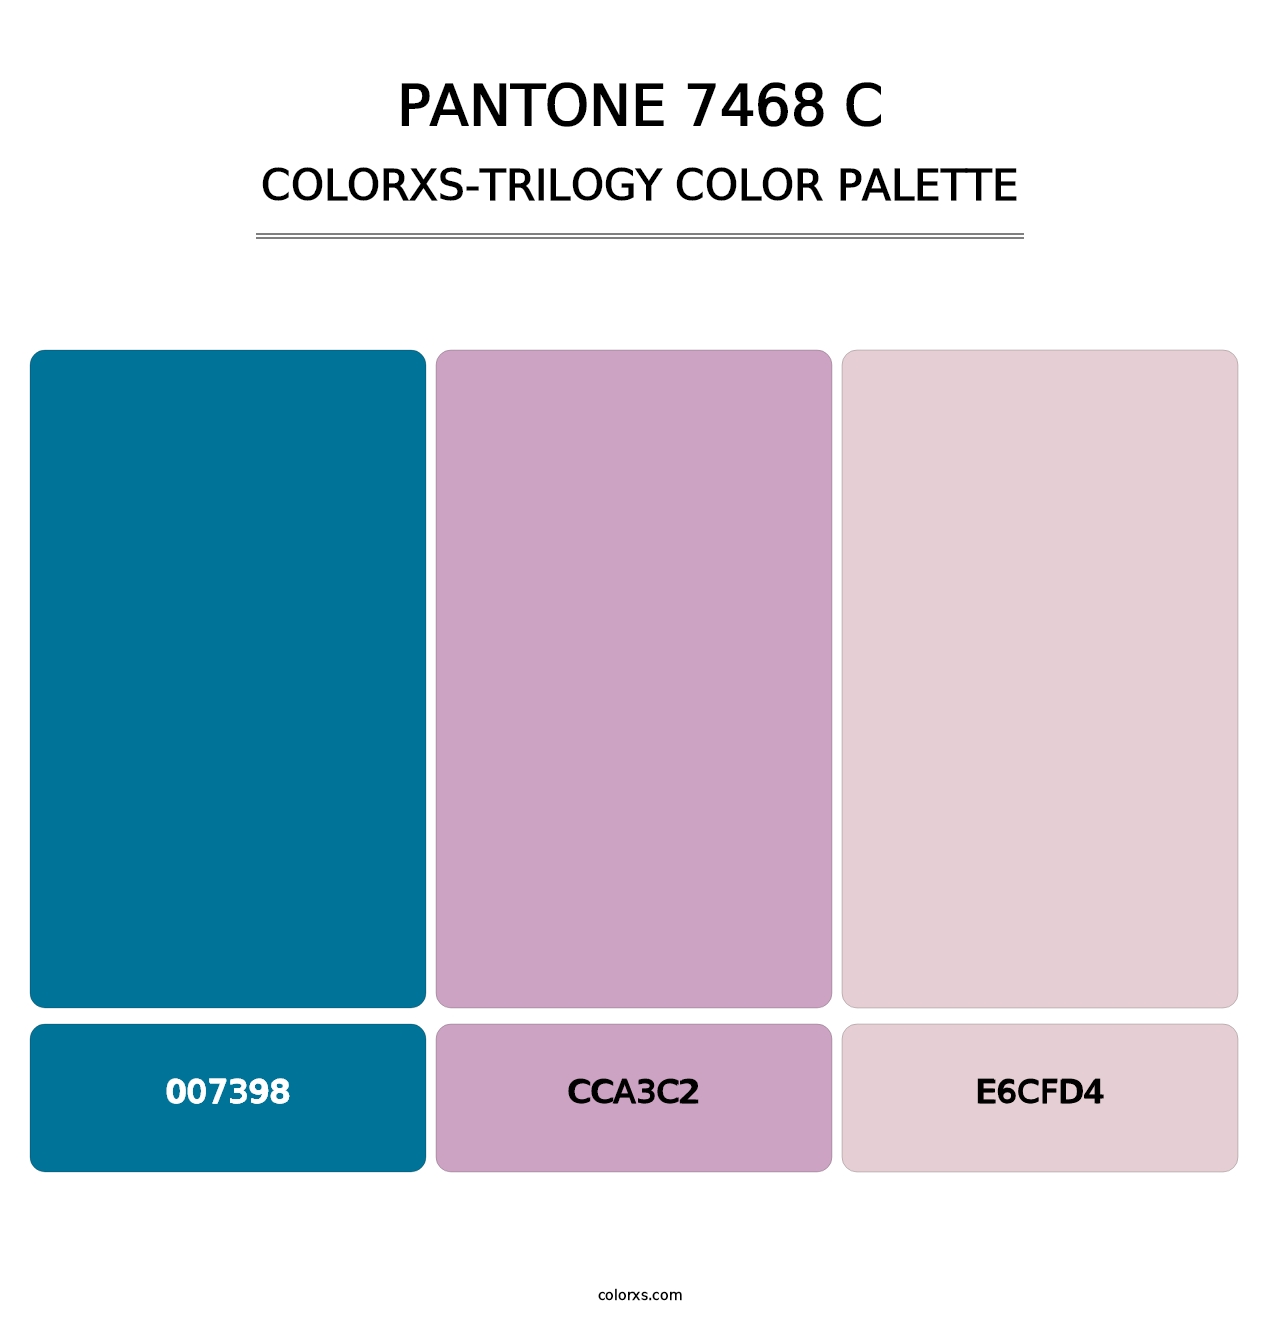 PANTONE 7468 C - Colorxs Trilogy Palette